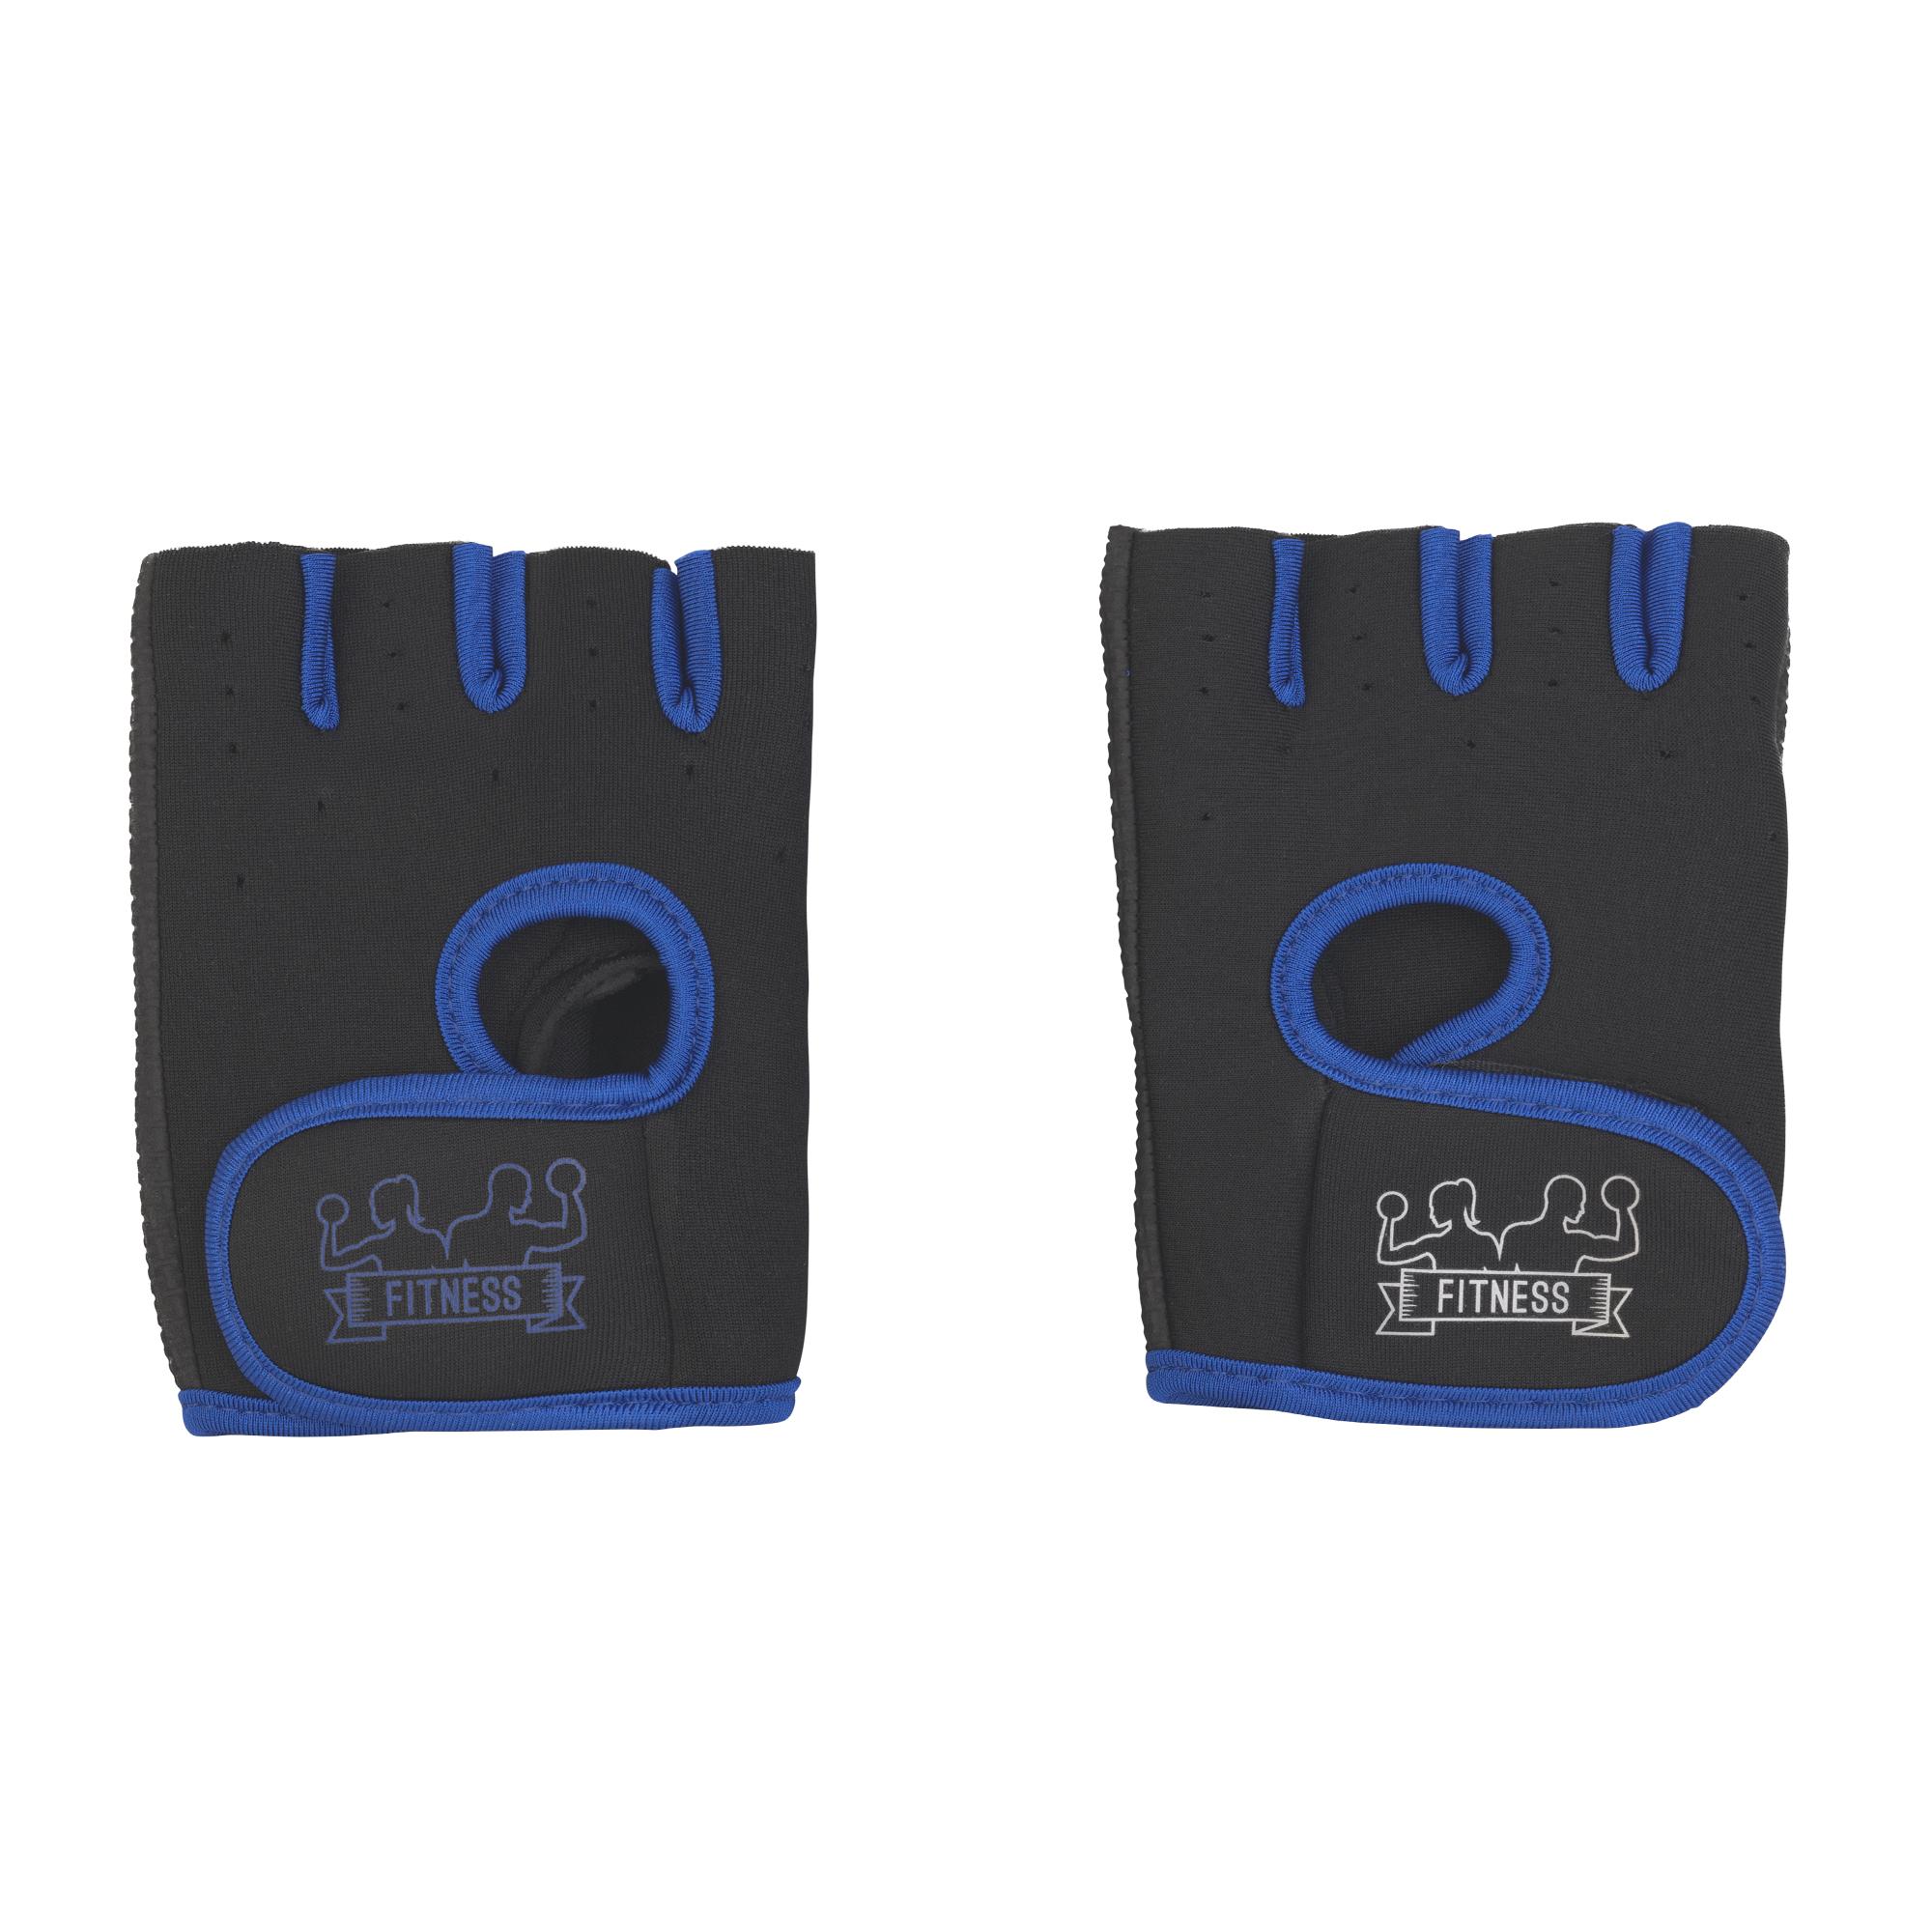 Перчатки для фитнеса "Рекорд" размер M, цвет черный с синим, фото 1